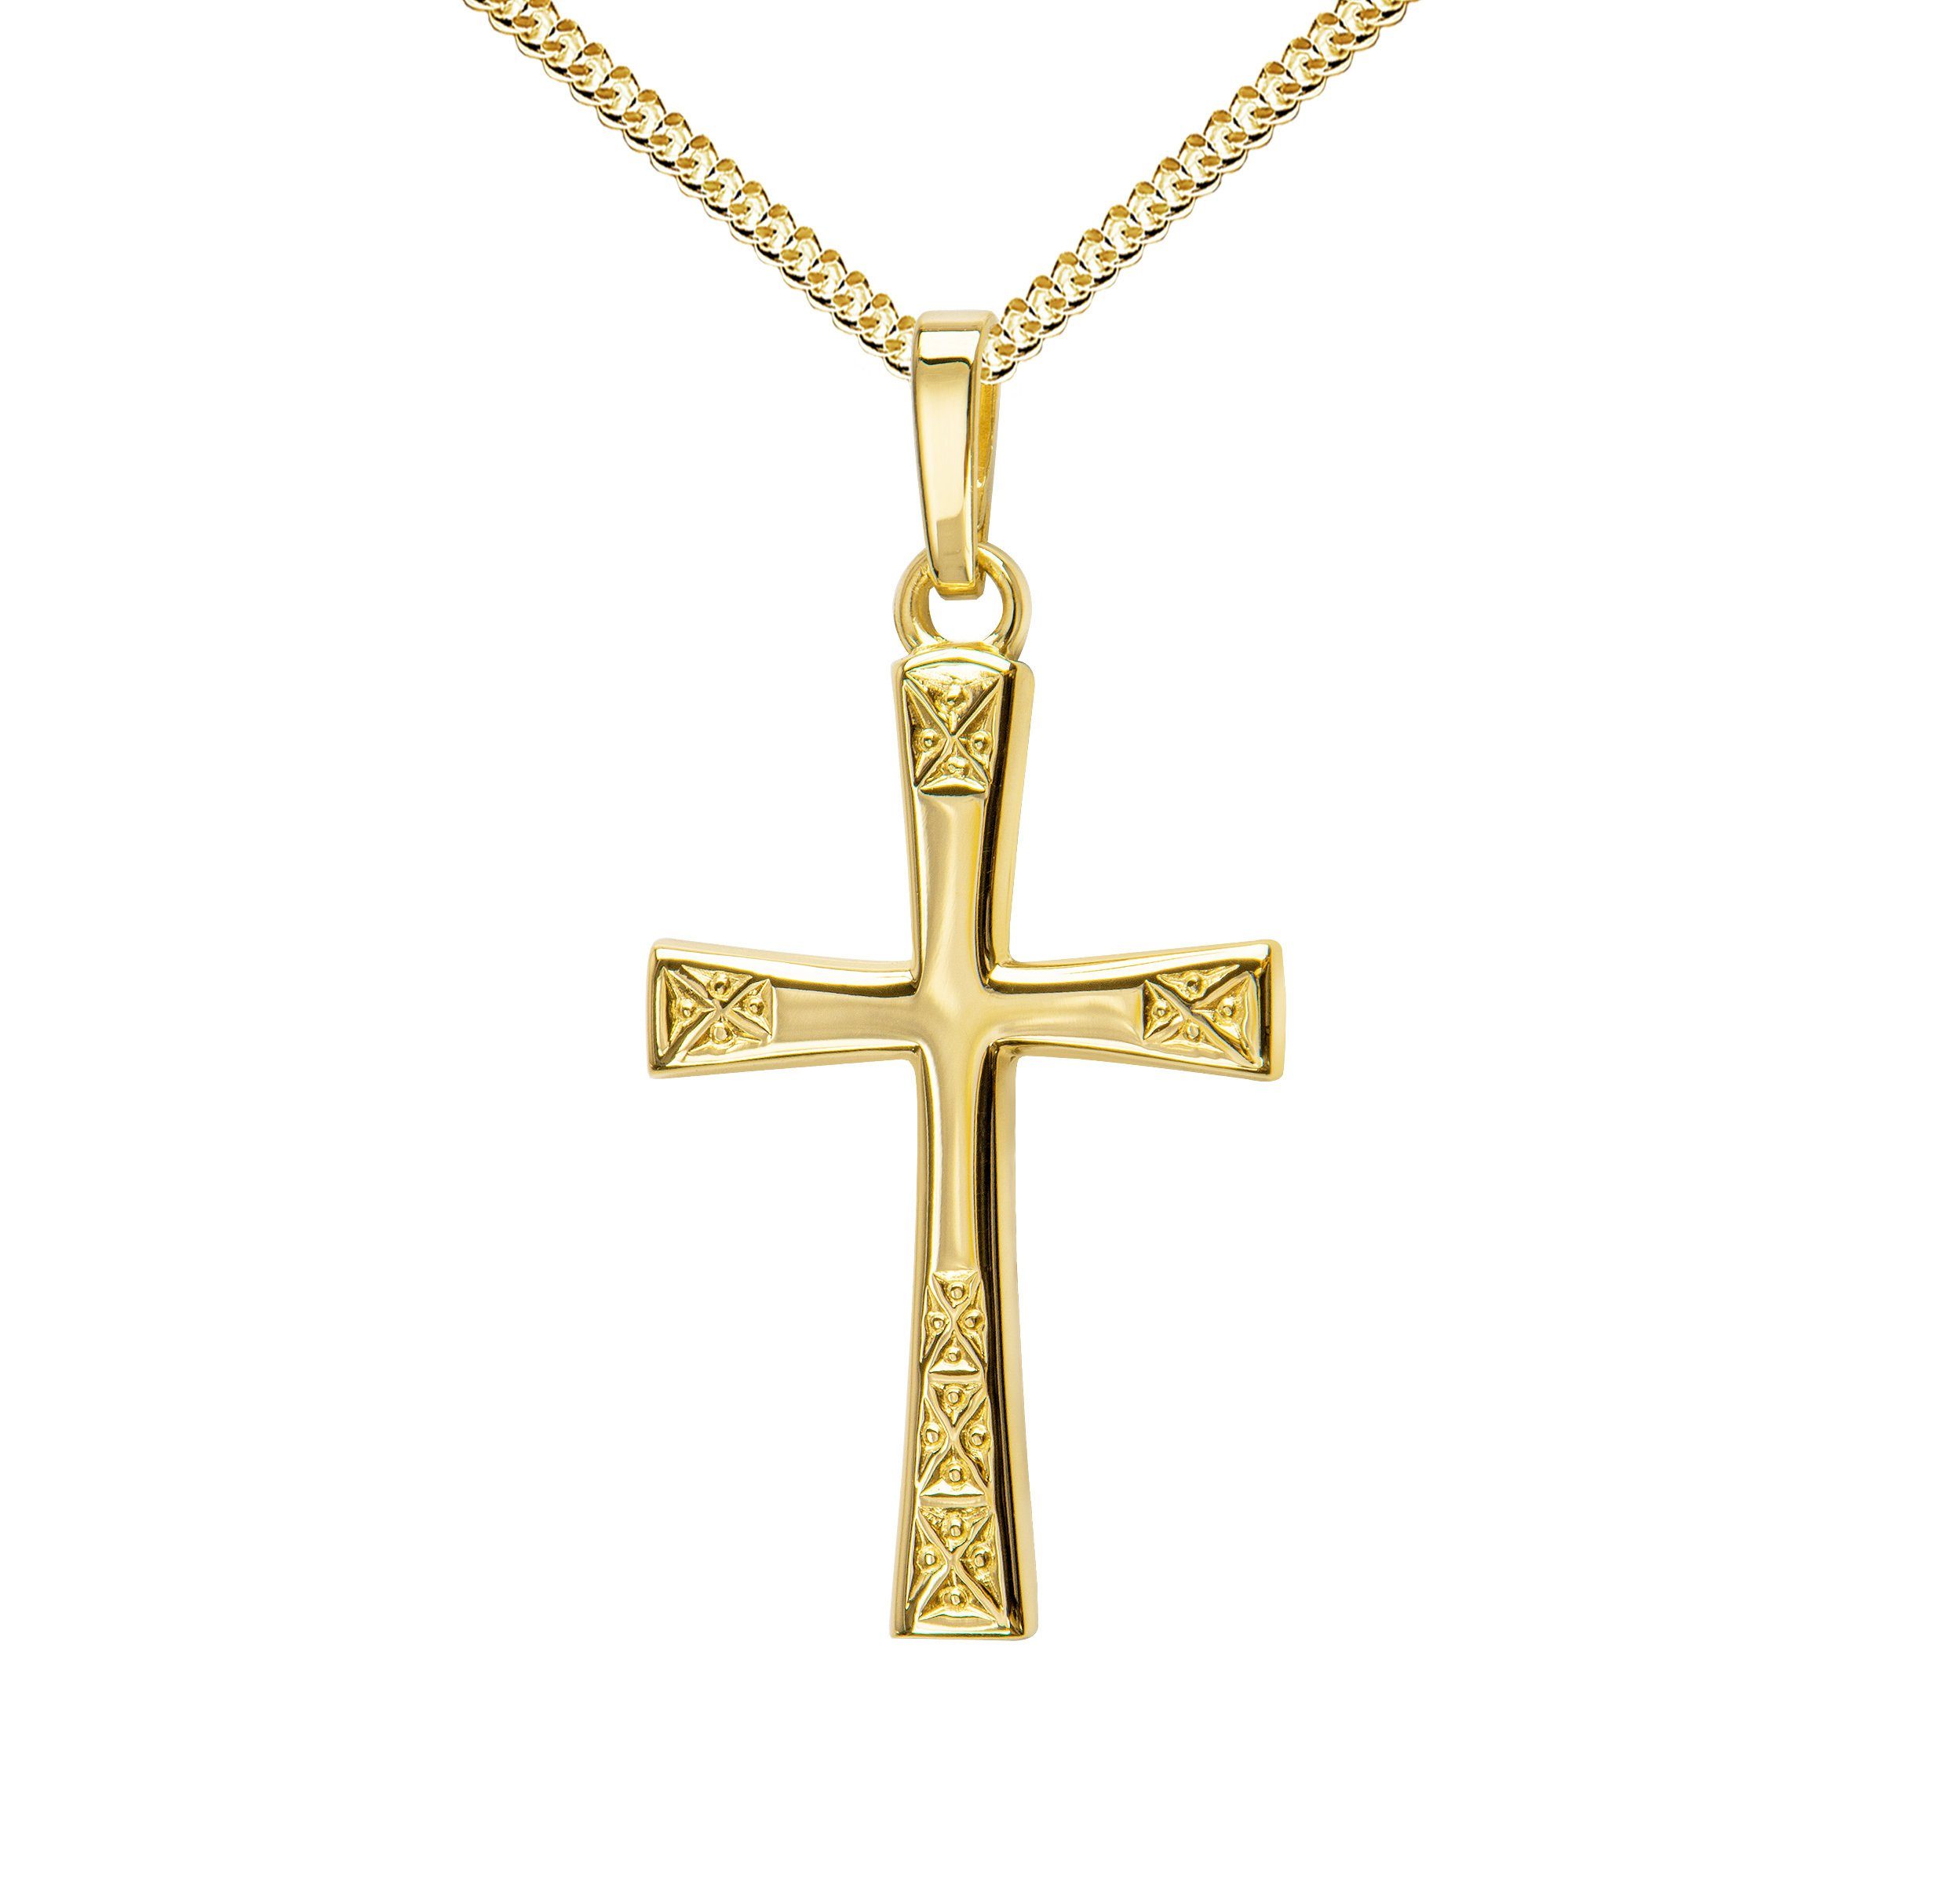 JEVELION Kreuzkette Kreuz Anhänger 585 Gold - Made in Germany (Goldkreuz, für Damen und Herren), Mit Kette vergoldet- Länge wählbar 36 - 70 cm oder ohne Kette.